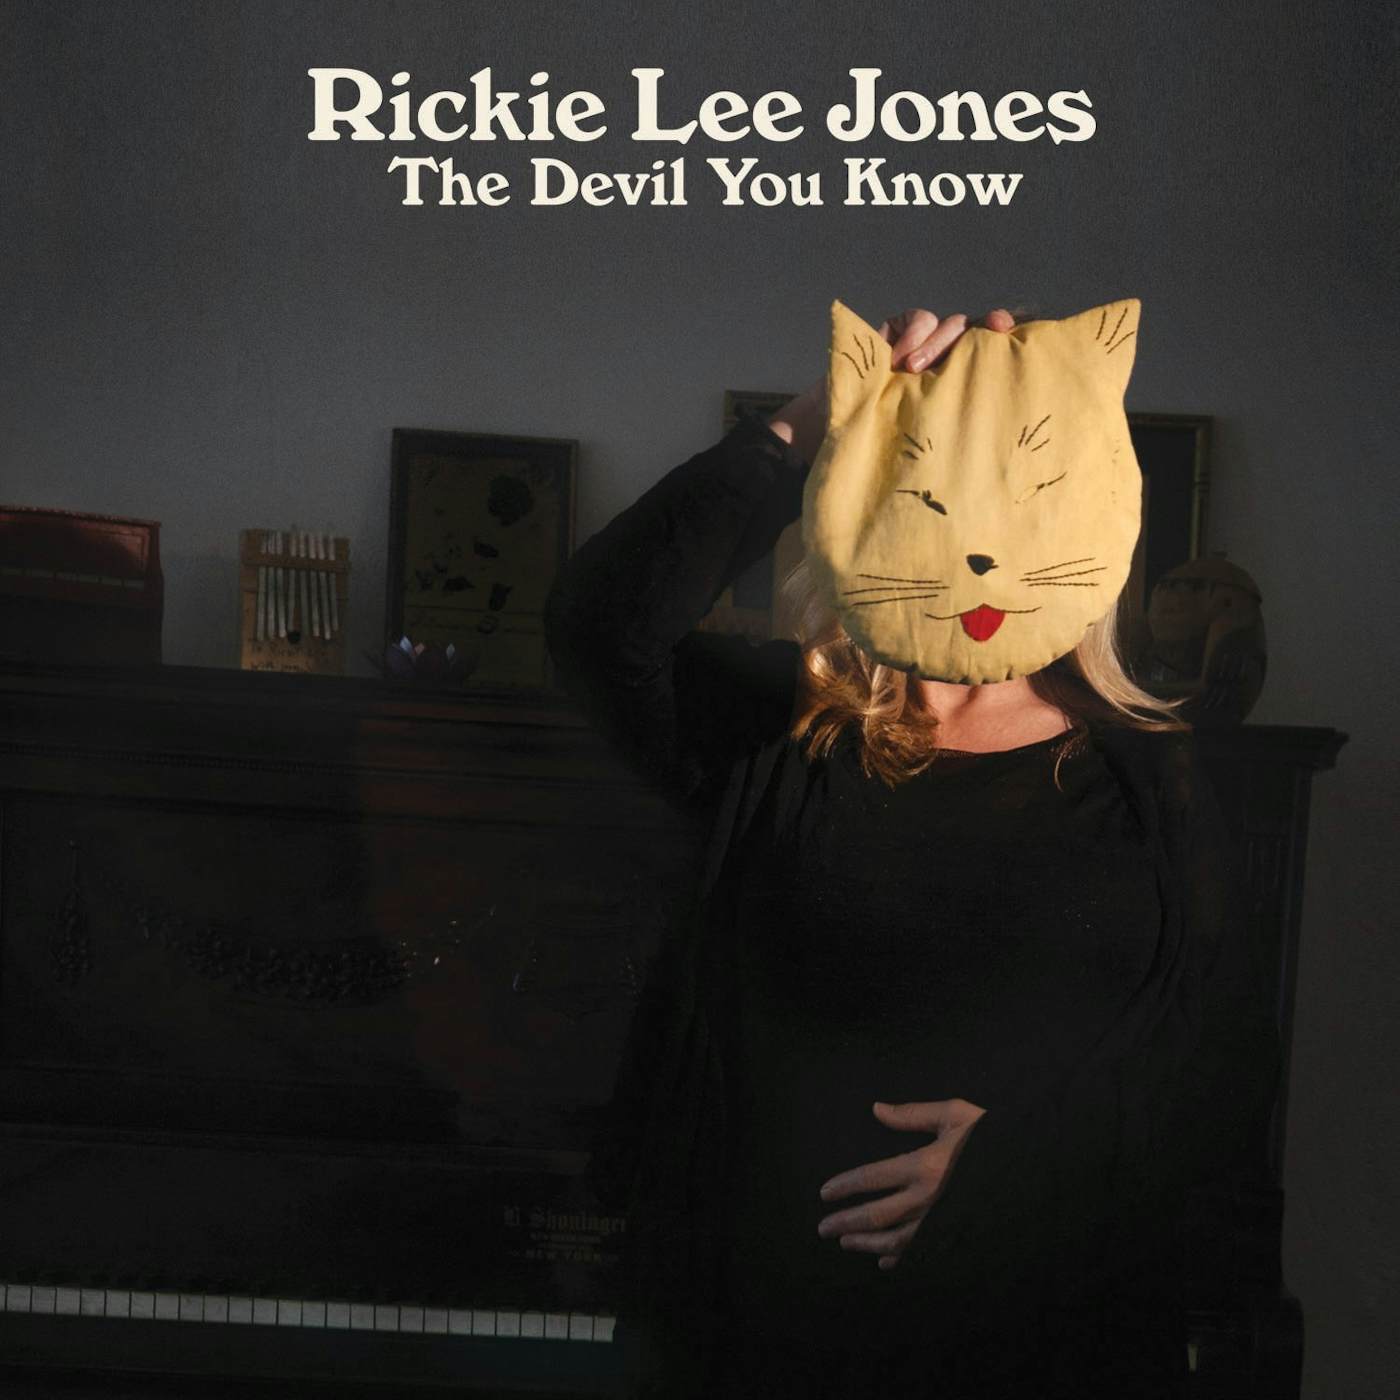 Rickie Lee Jones DEVIL YOU KNOW CD